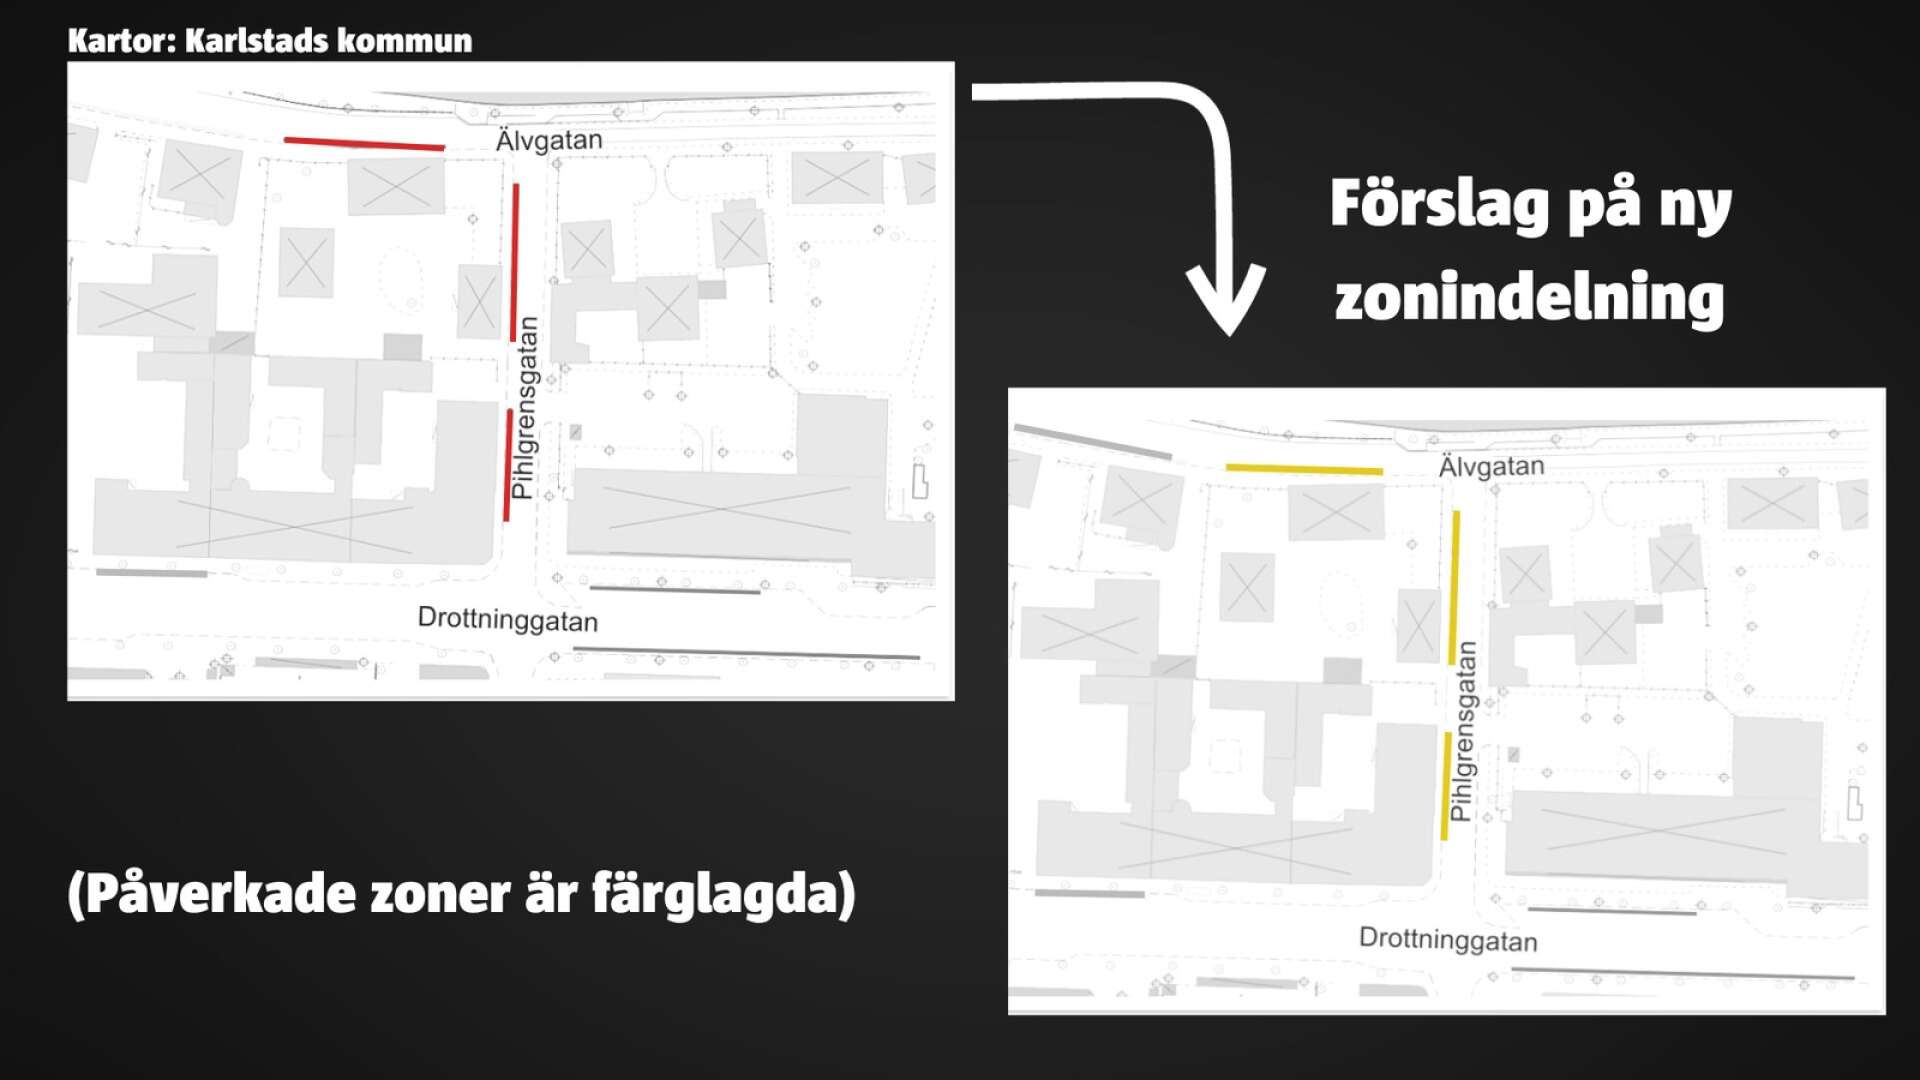 Pihlgrensgatan och del av Älvgatan ändrar färg, från röd till den billigare gula zonen. 